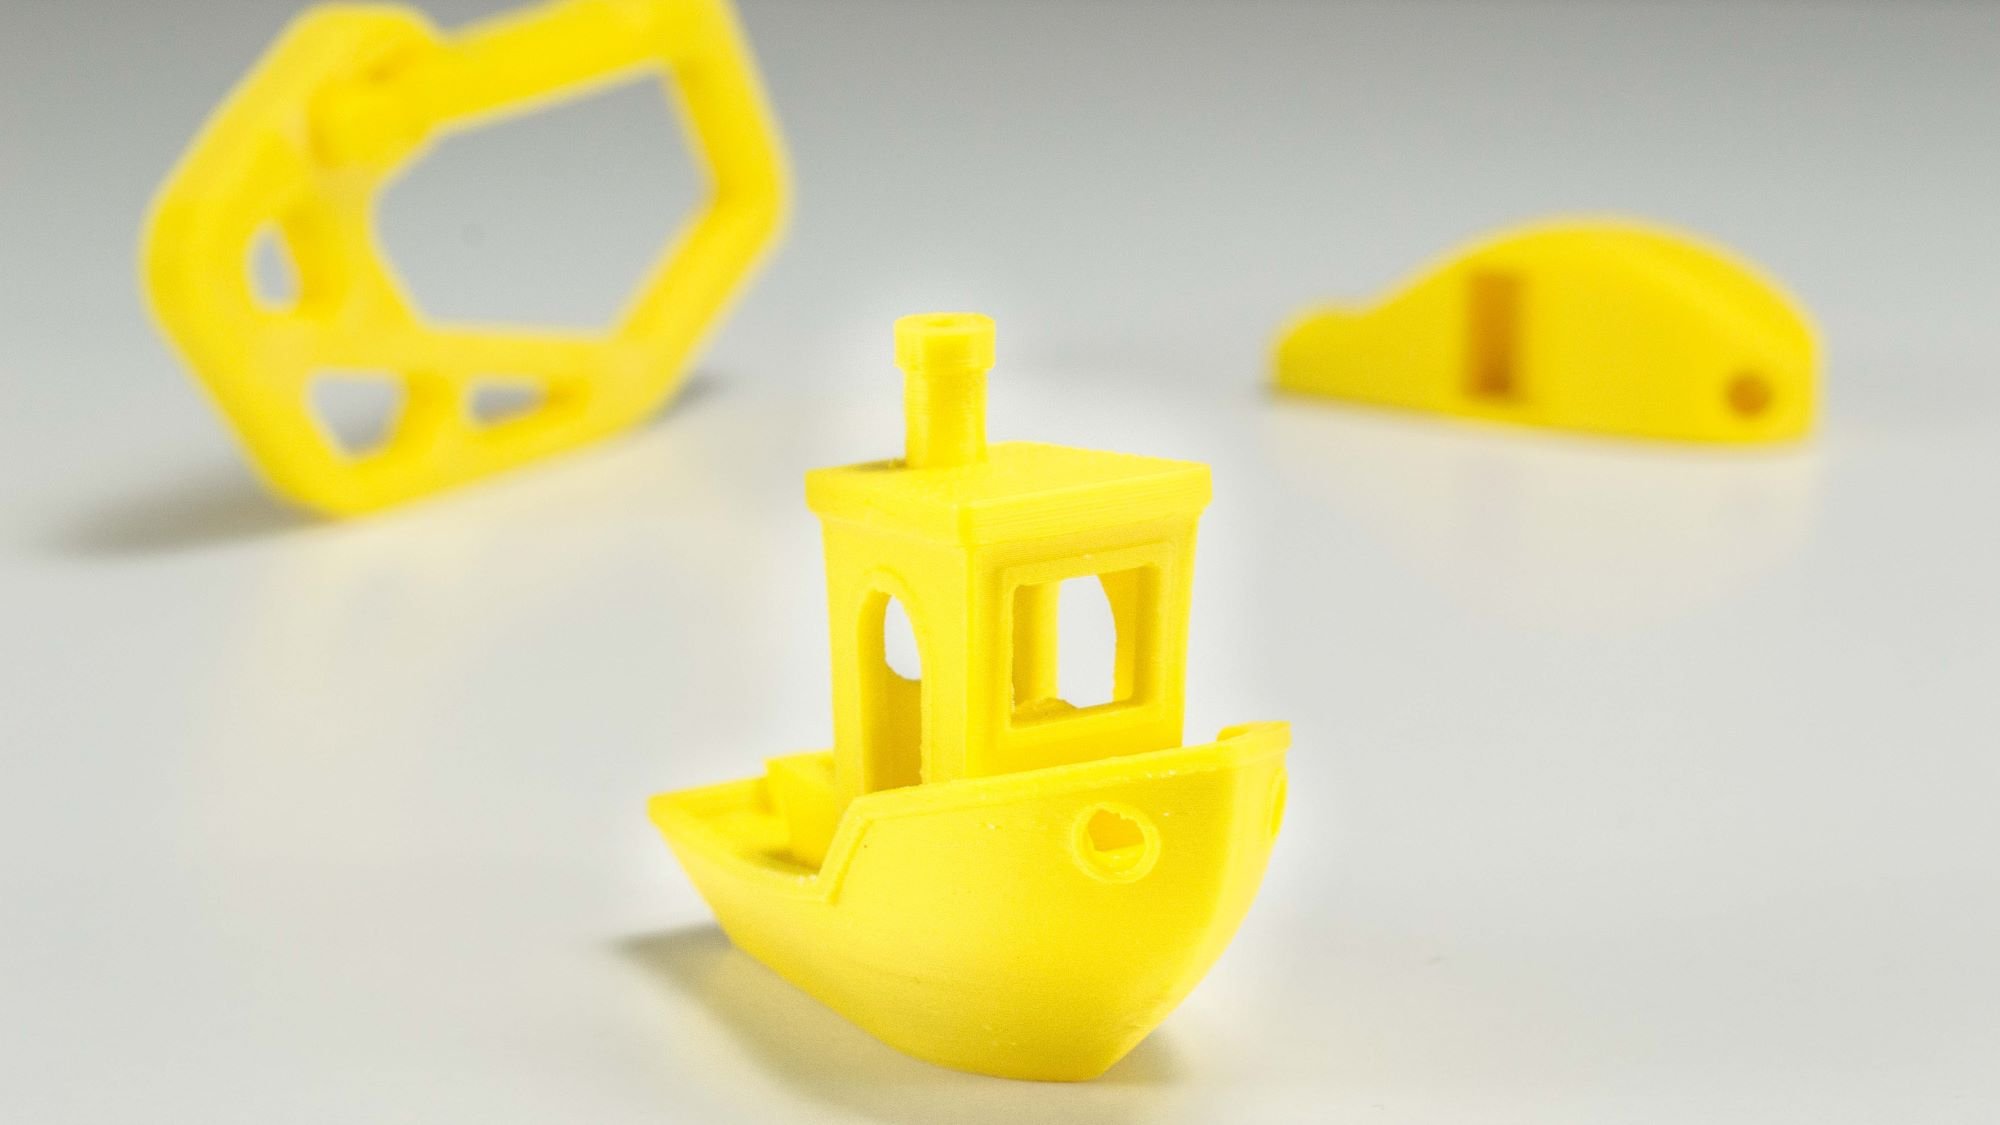 PLA, ABS, PETG Guide d'achat des matériaux pour imprimante 3D en fo —  Filimprimante3D